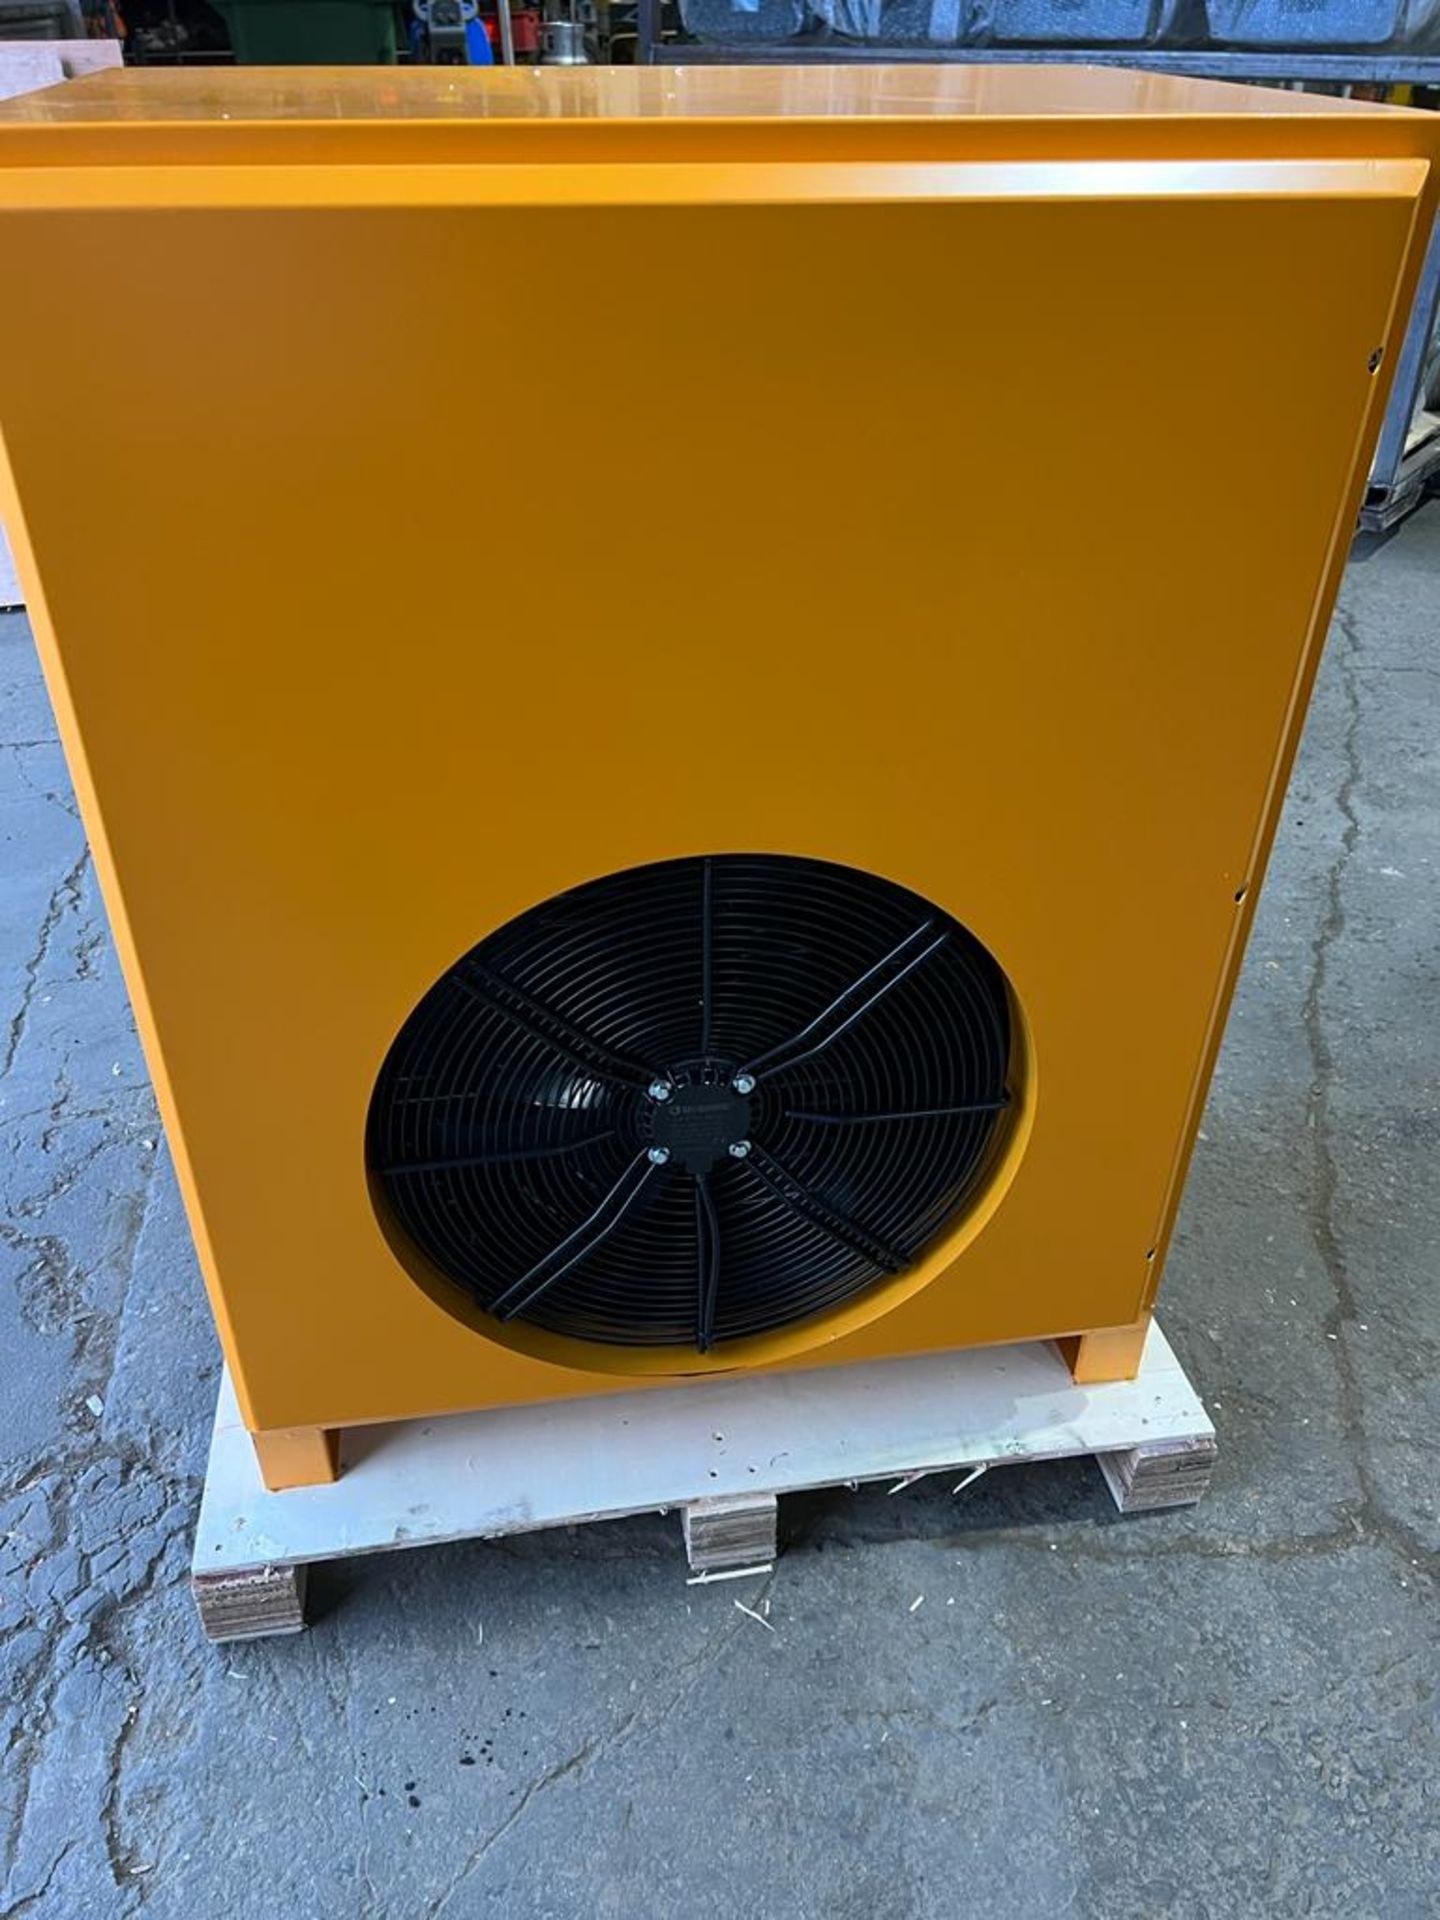 MINT Pneu-Airtec Compressed Air Dryer 476 CFM - 100HP UNUSED / NEW unit - Image 2 of 2